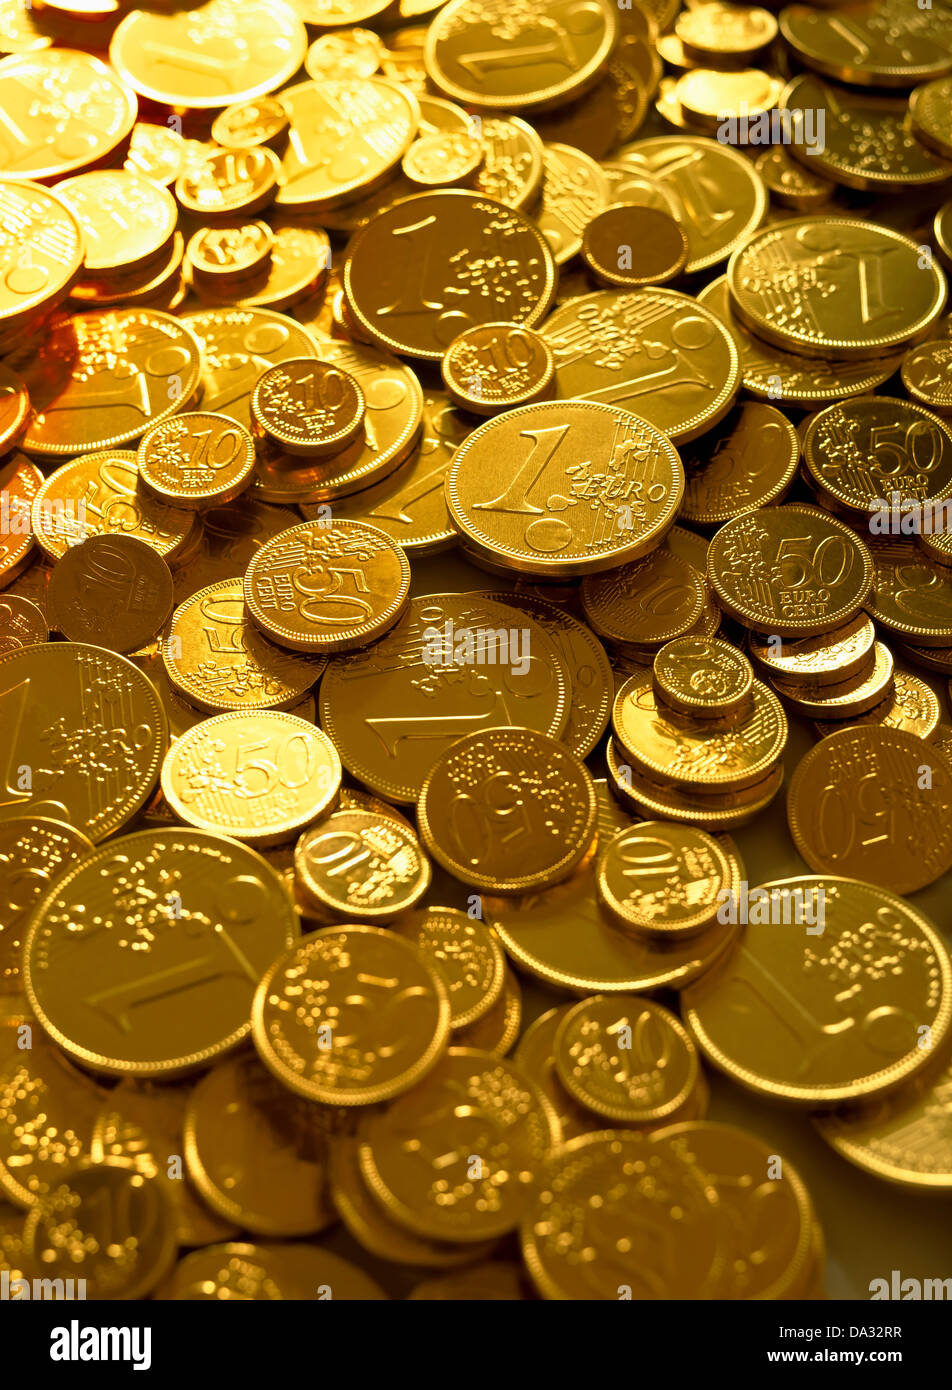 Golden 1 Euro coins Stock Photo